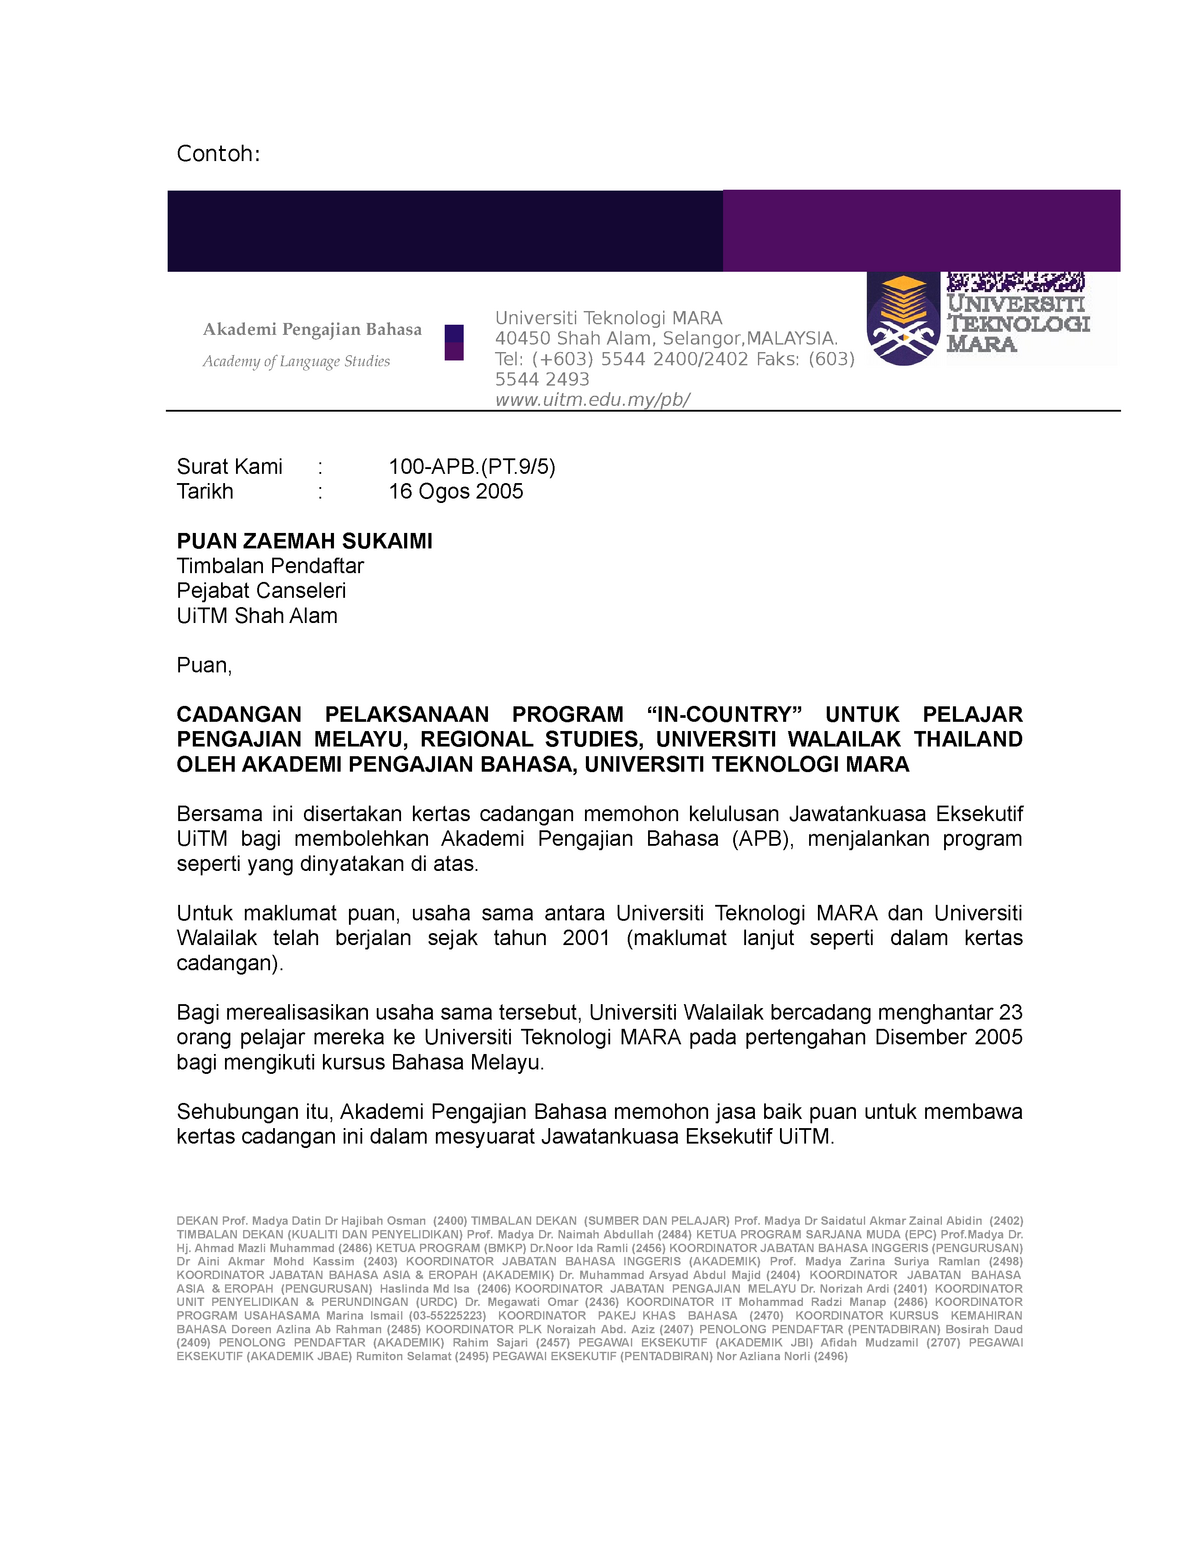 Contoh Surat Rasmi Baru Contoh Universiti Teknologi Mara 40450 Shah Alam Selangor Malaysia Studocu